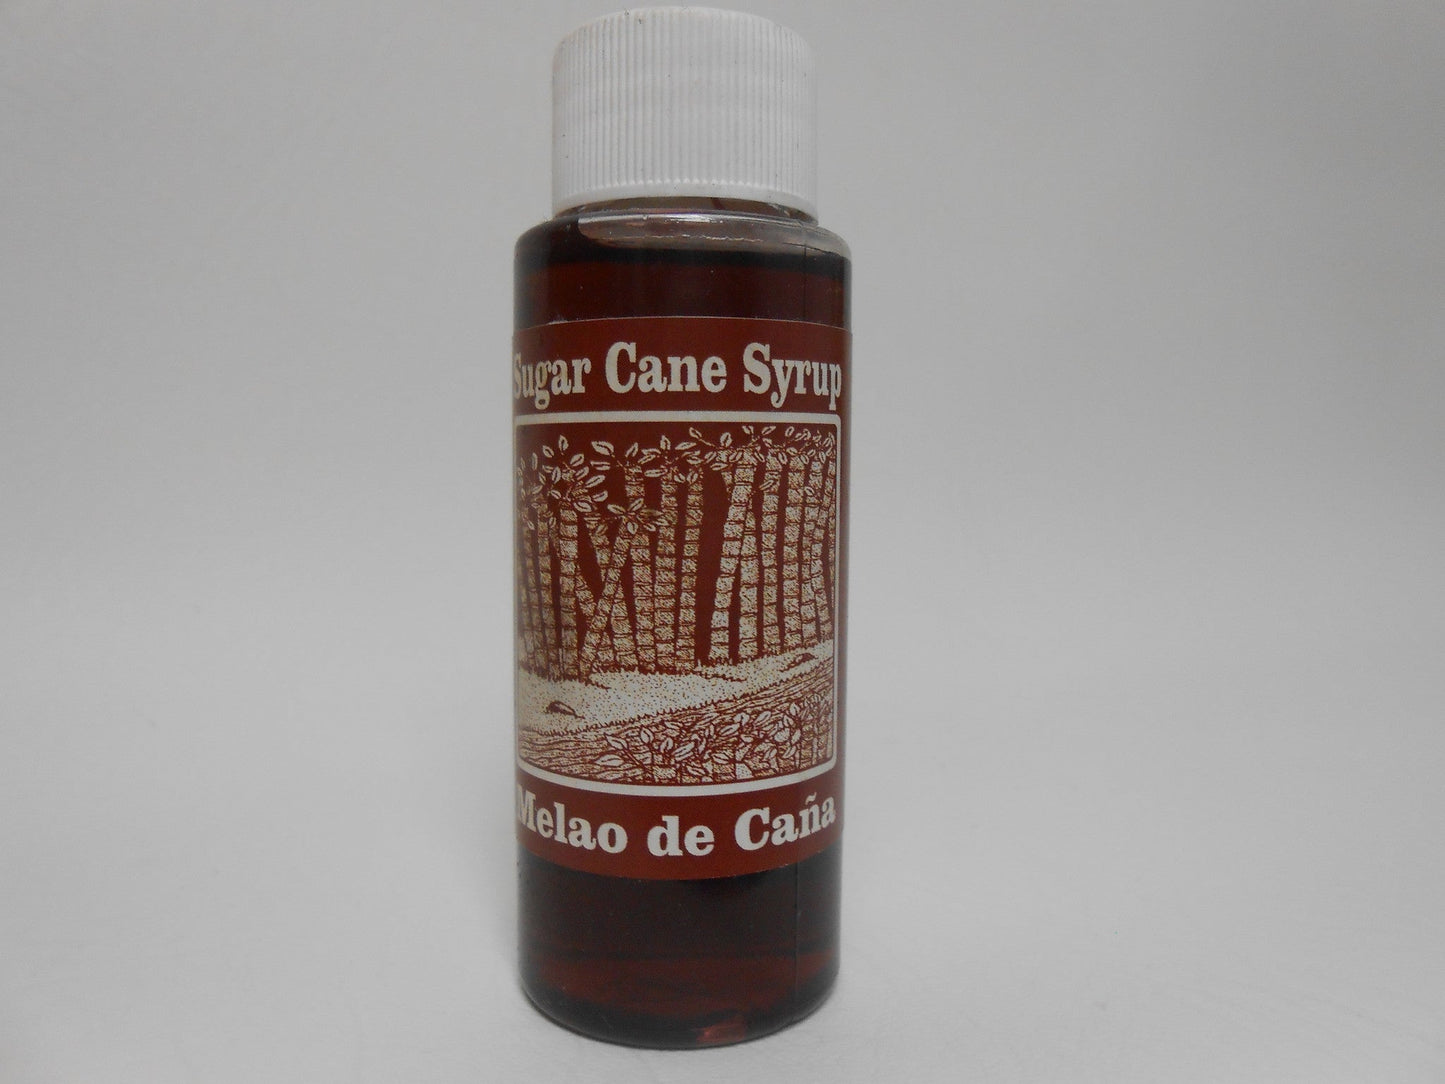 Sugar Cane Syrup-Melao de Cana